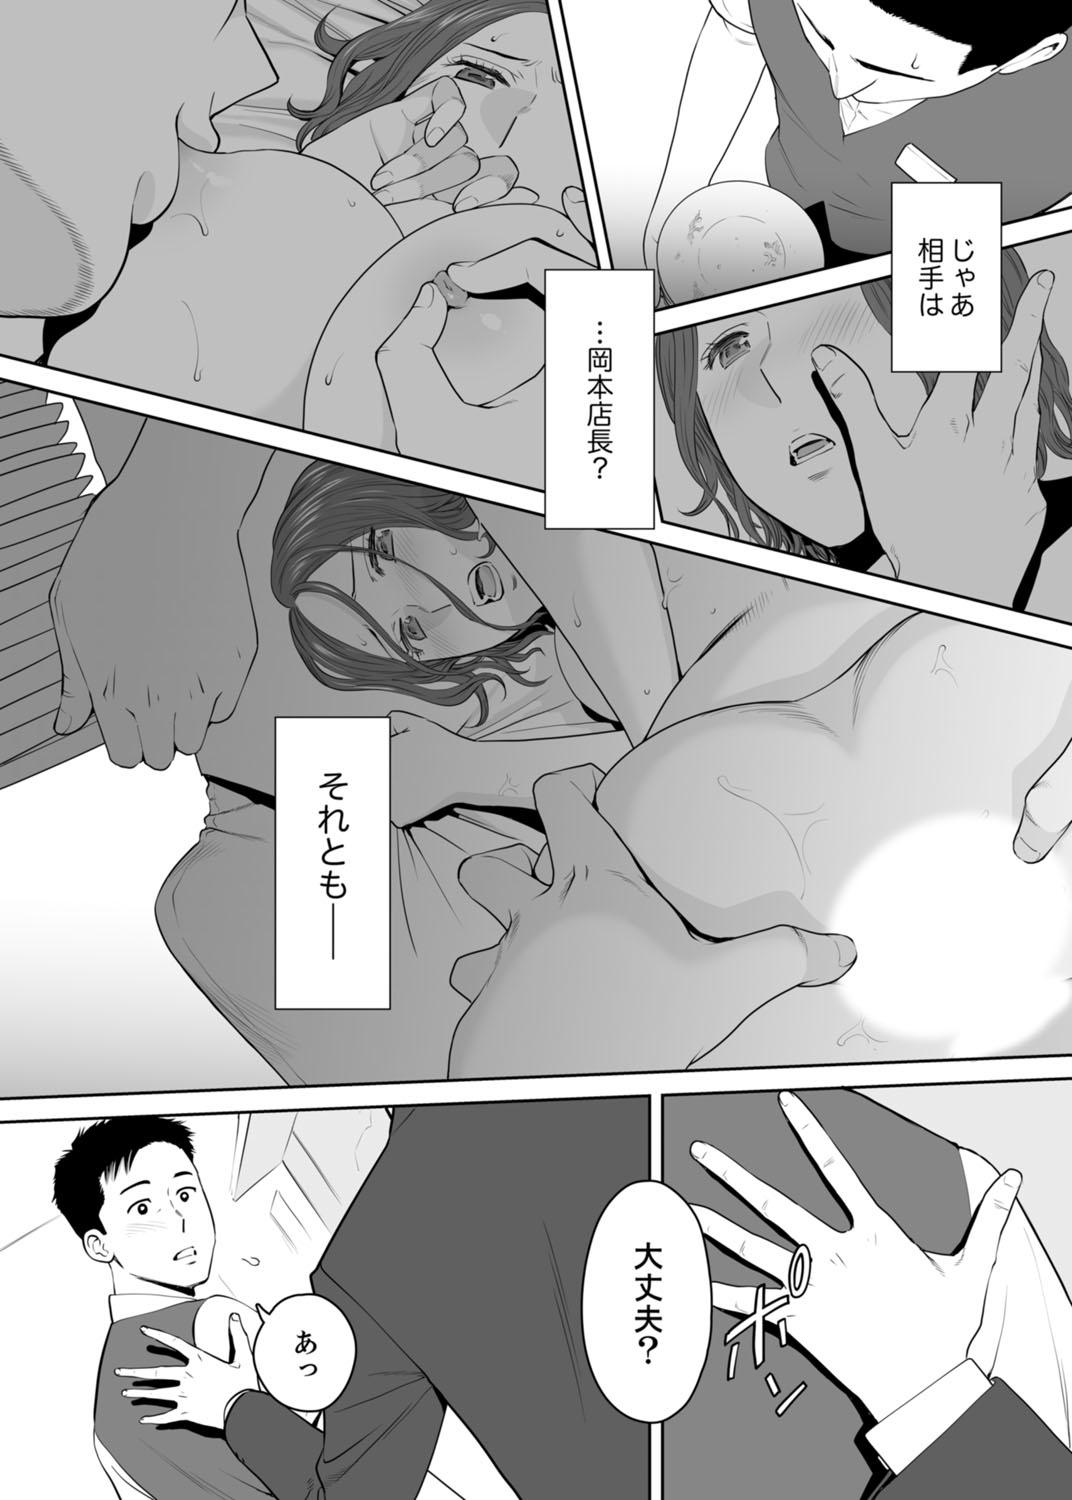 Longhair "Otto no Buka ni Ikasarechau..." Aragaezu Kanjite Shimau Furinzuma 11 8teen - Page 5